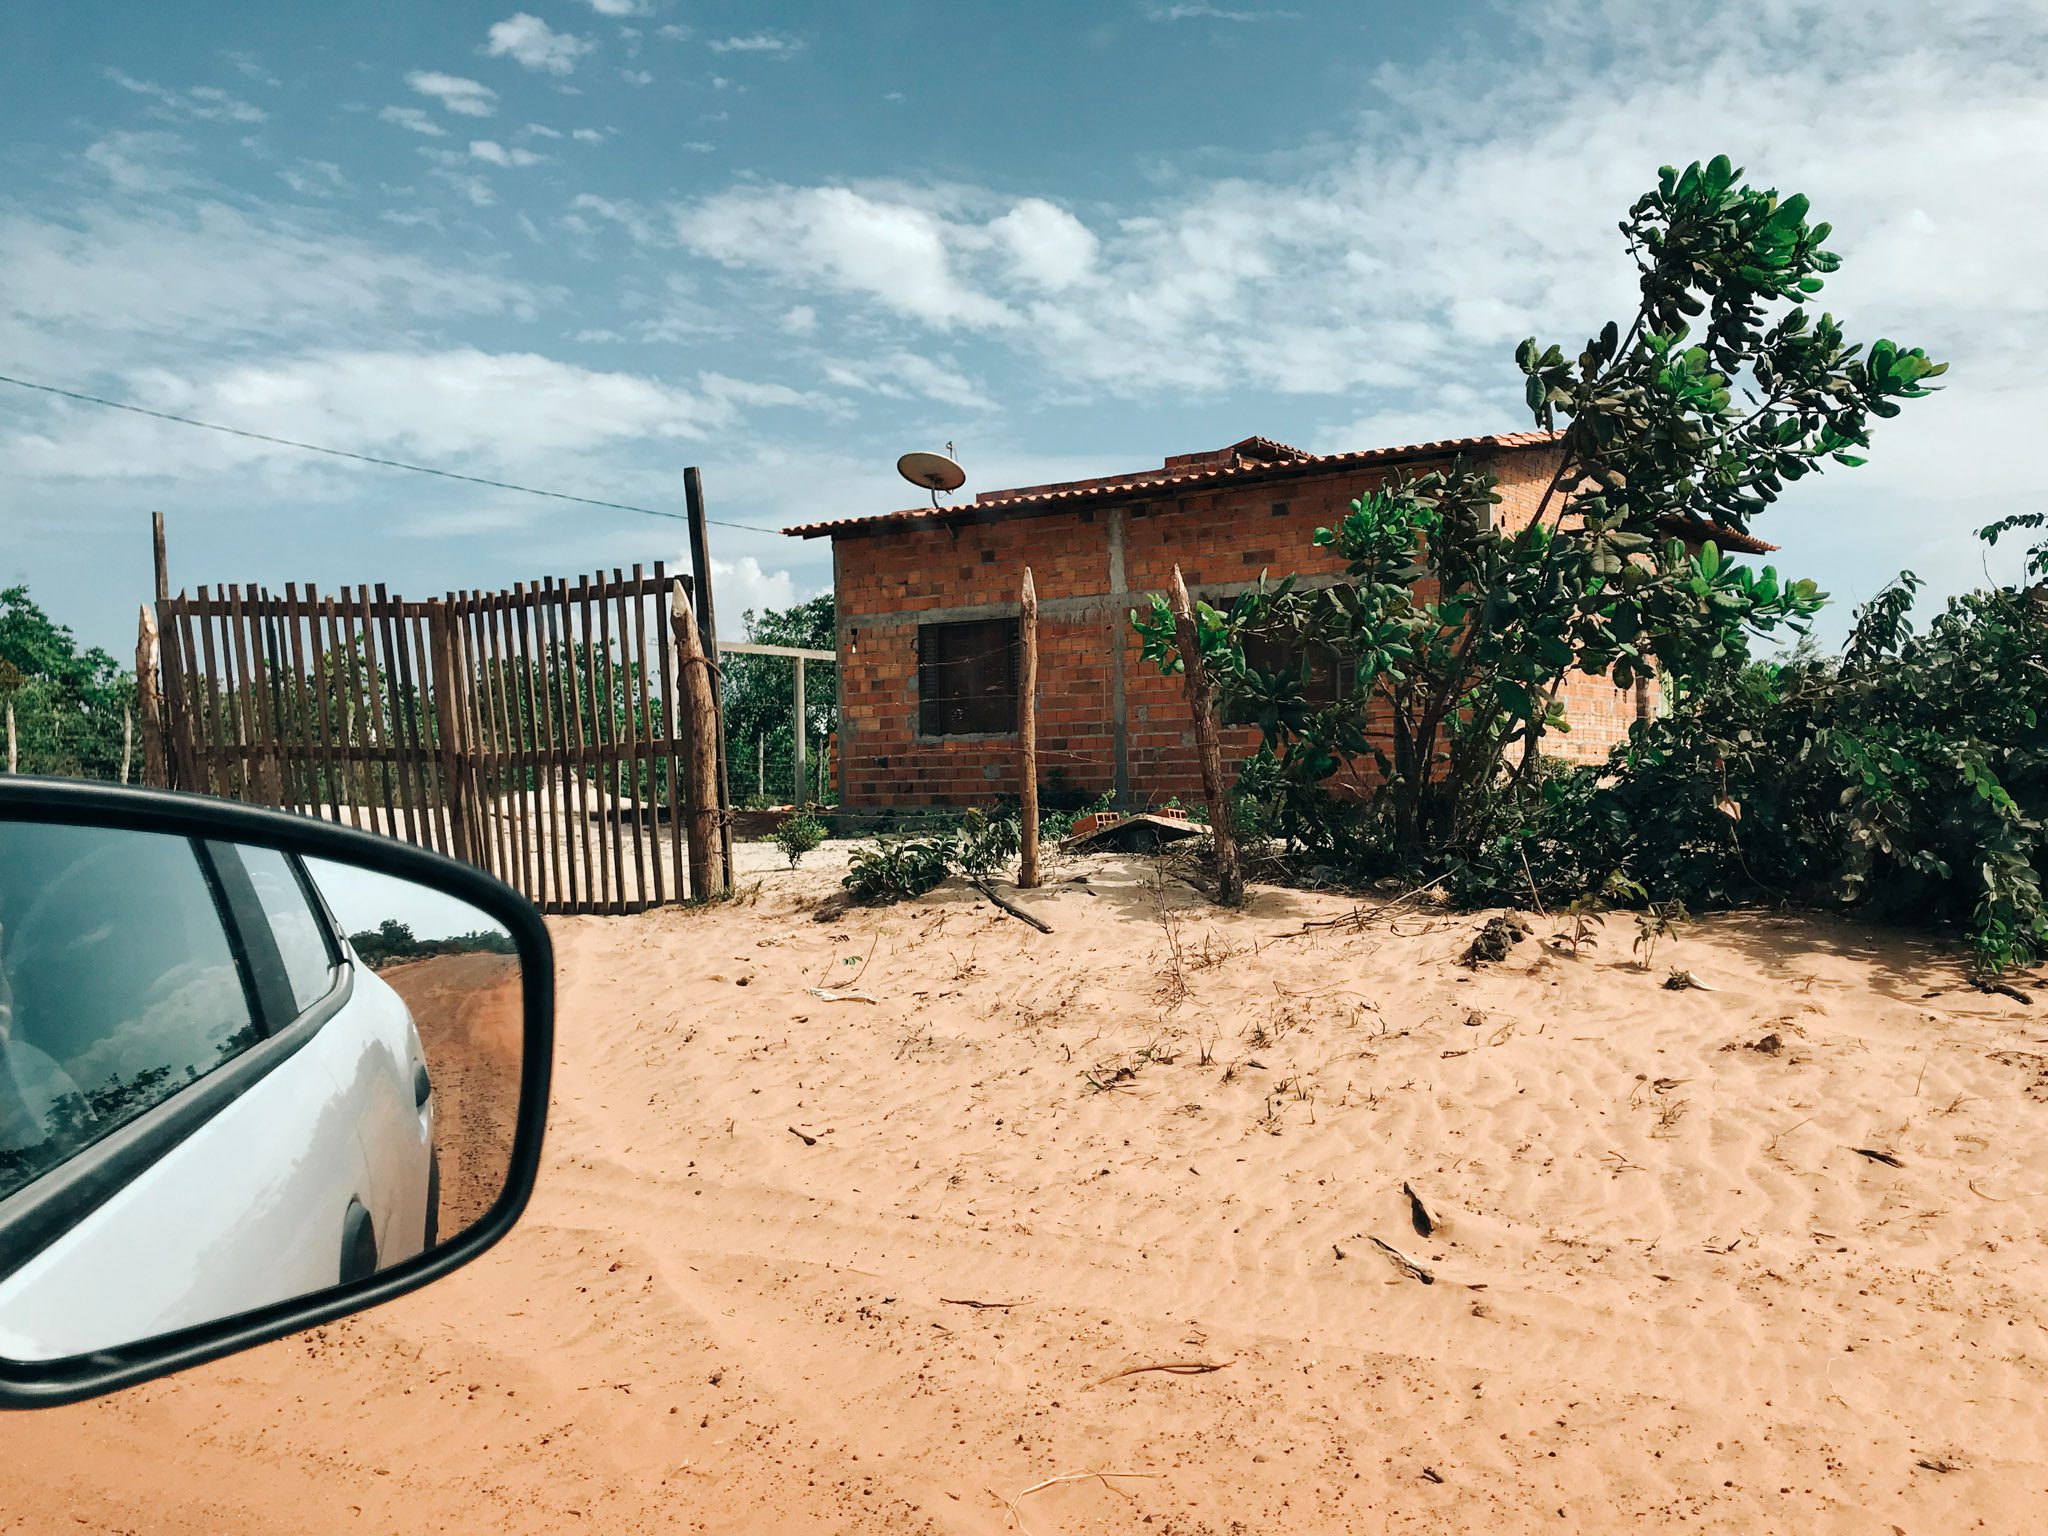 Início da estrada de Barreirinhas para Paulino Neves, Maranhão